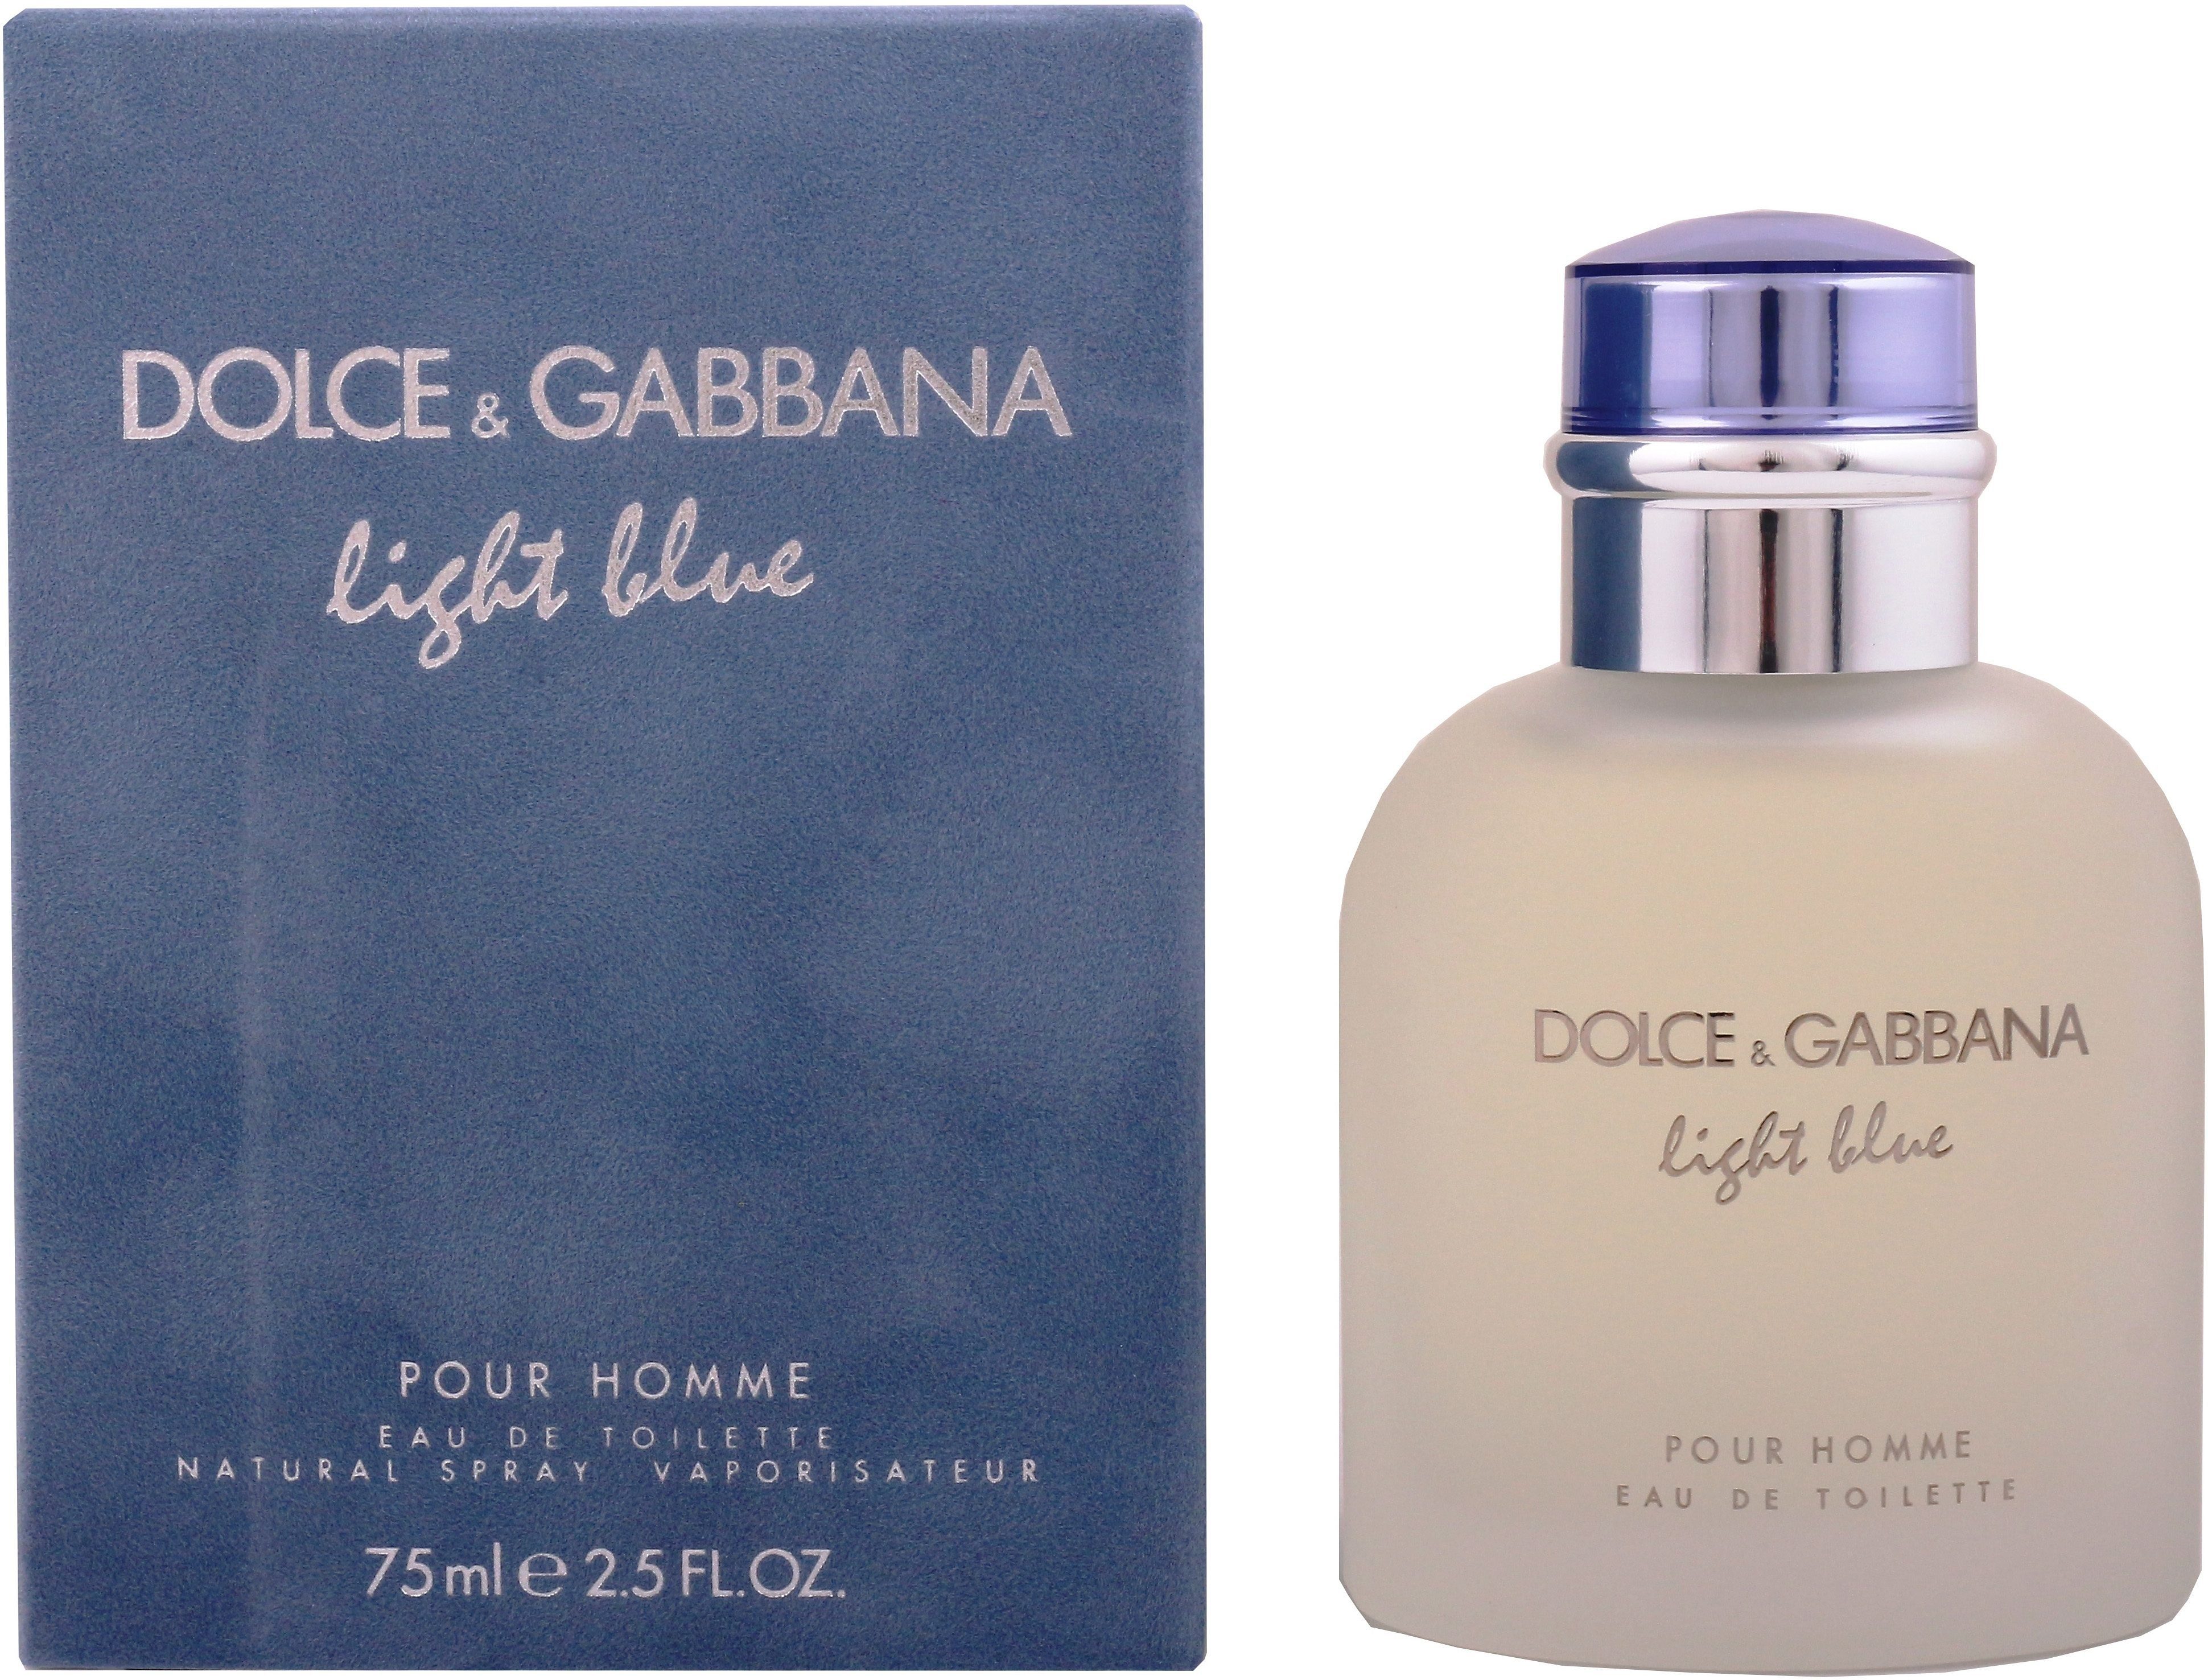 Blue Pour EdT GABBANA & him Homme, Eau Light de for DOLCE Parfum, Toilette Männer, für